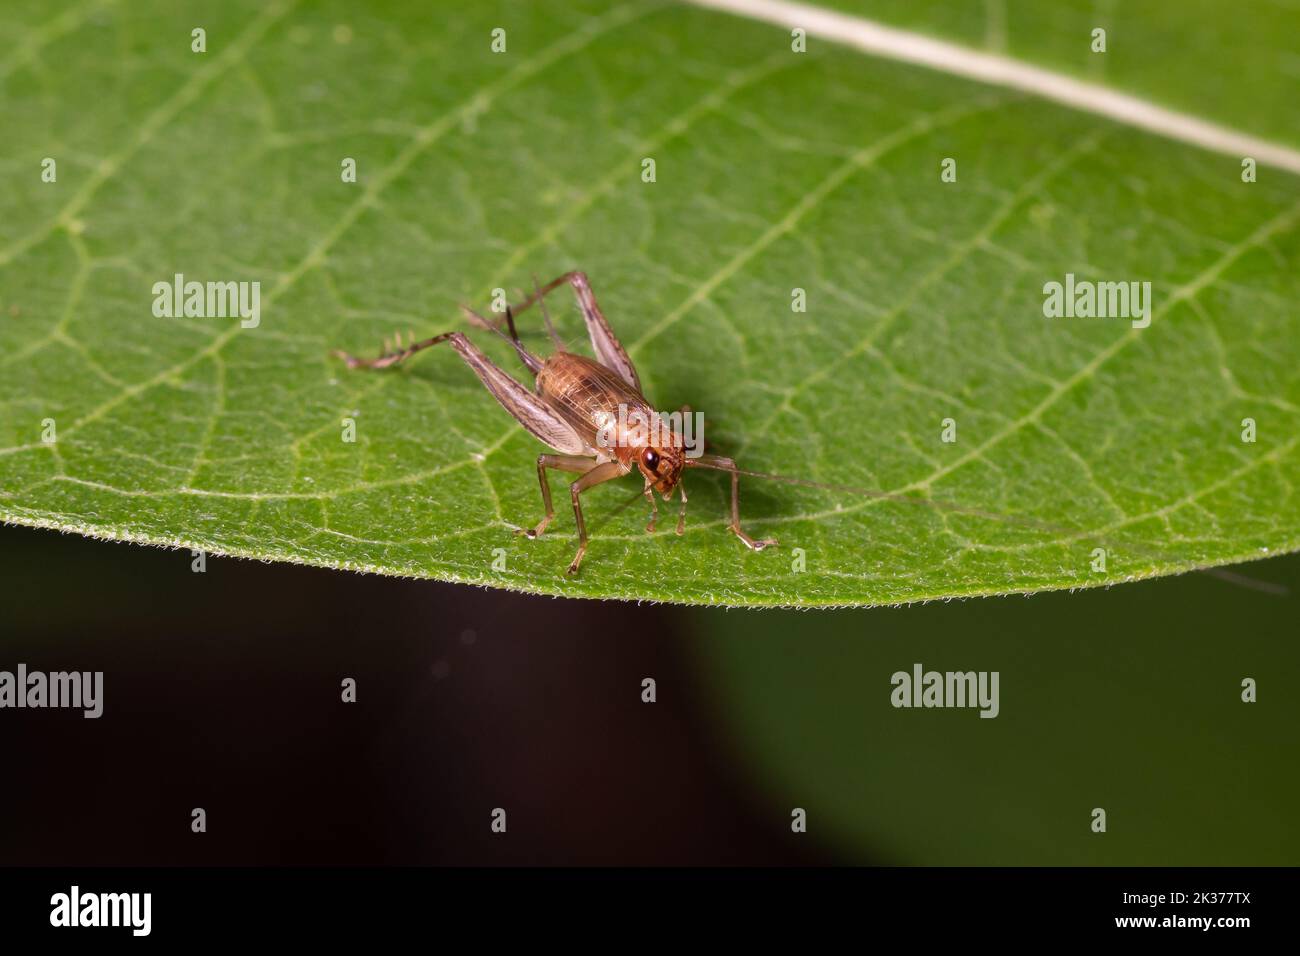 Nahaufnahme von House Cricket Nymphe auf Blatt der Pflanze. Schädlingsbekämpfung, Insekten und Naturschutz Konzept. Stockfoto